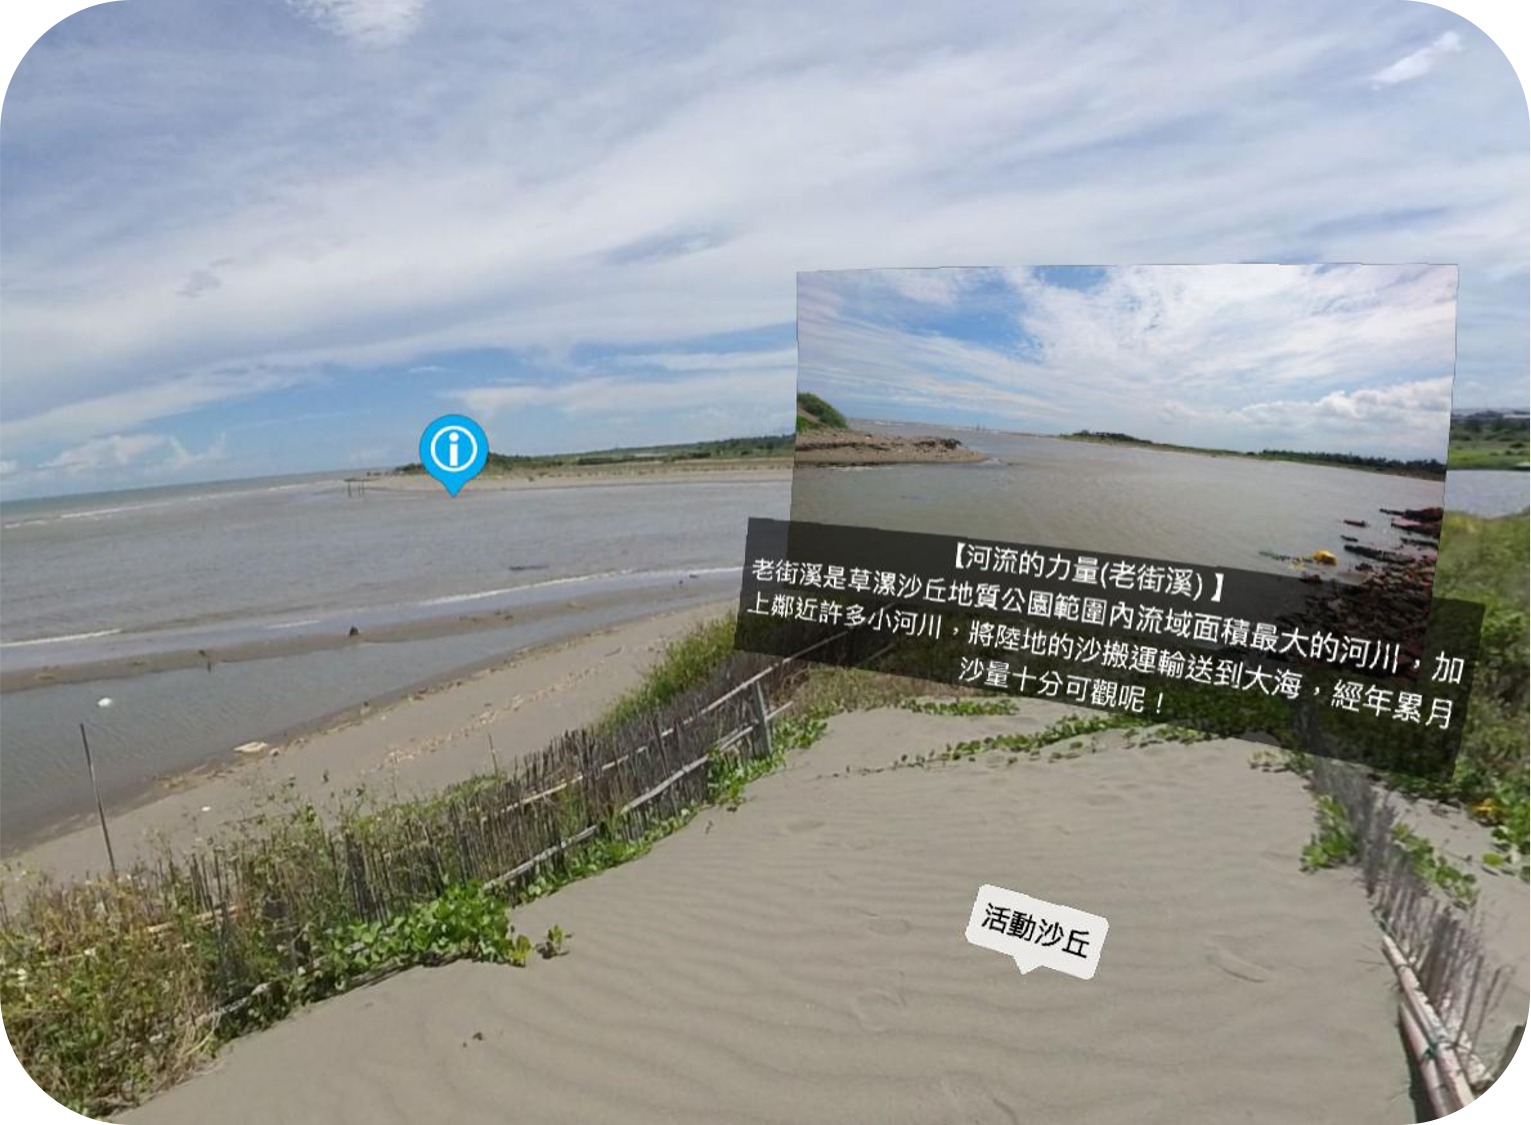 臺灣的地形與海域VR課程社會領域